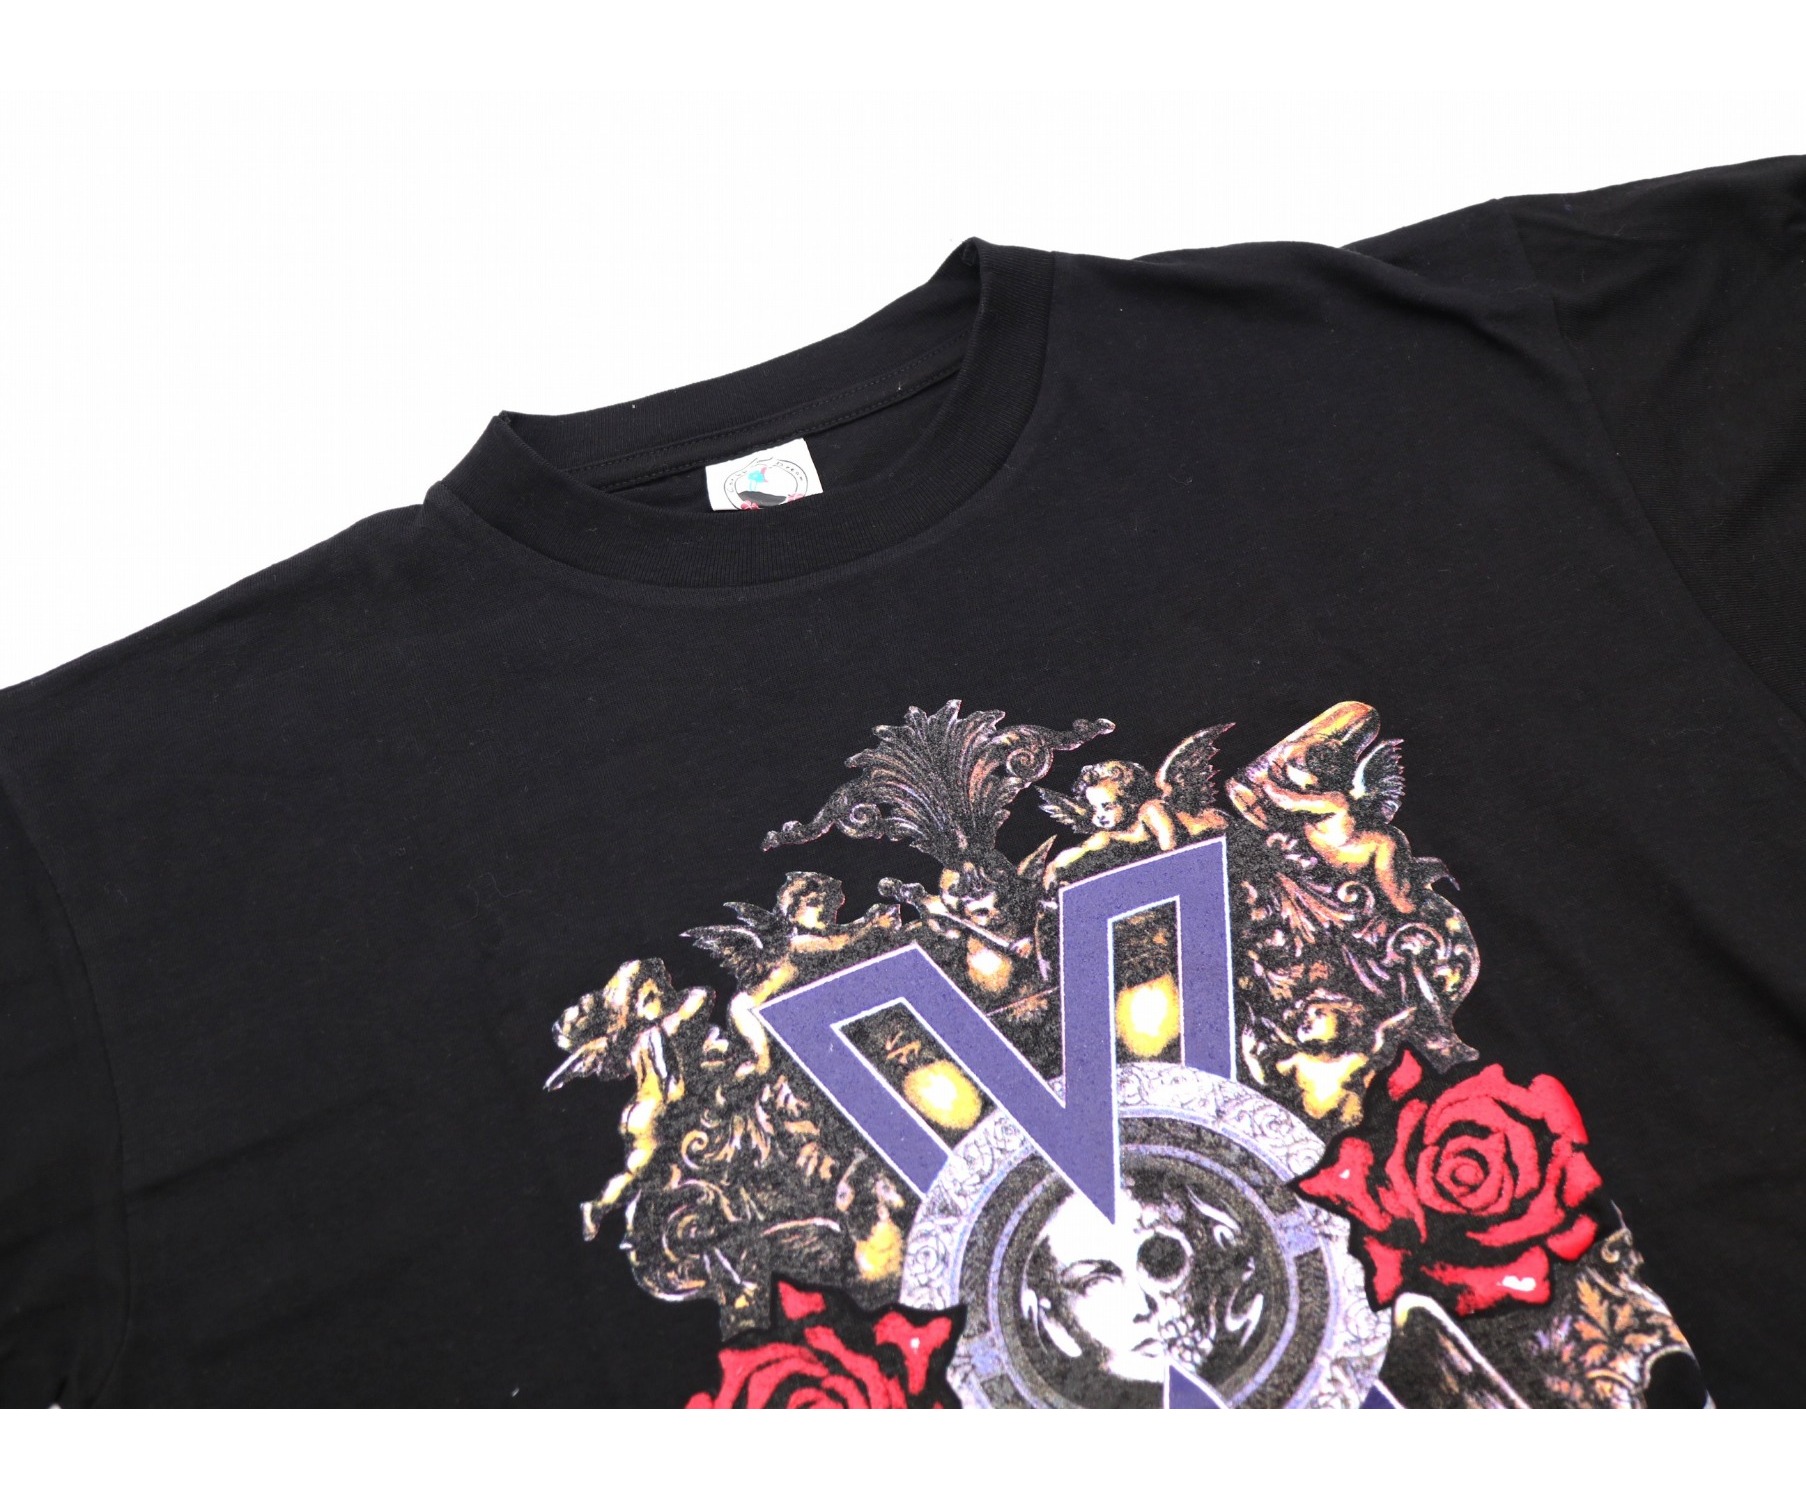 バンドTシャツ (バンドTシャツ) [古着]90’s X JAPAN バンドTシャツ ブラック サイズ:L  デッドストック・91年ツアー・STAFF・X JAPAN前身(X時代物)・Violence in j